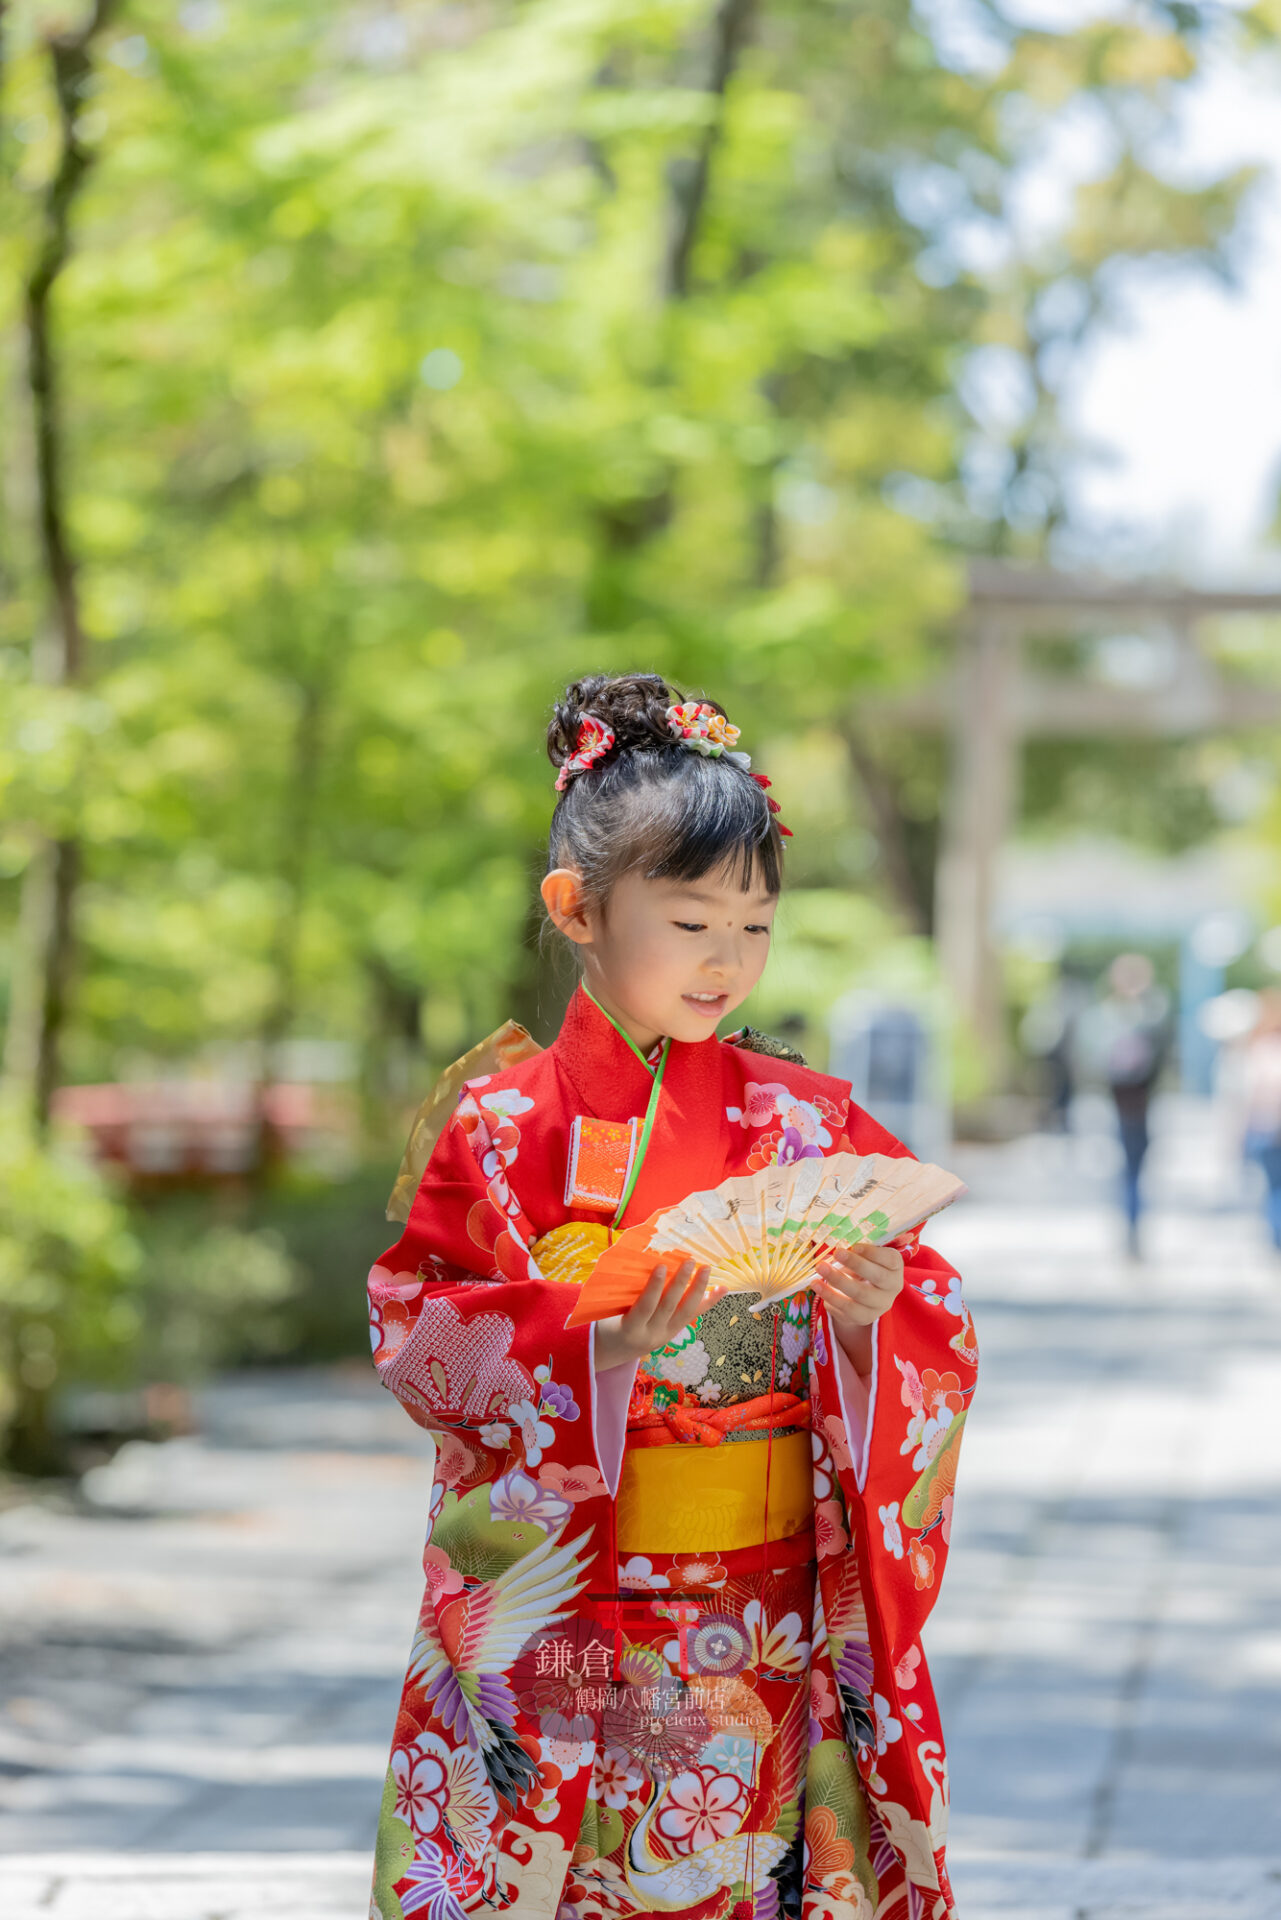 赤い着物で七五三のお参りの女の子 鎌倉鶴岡八幡宮出張撮影